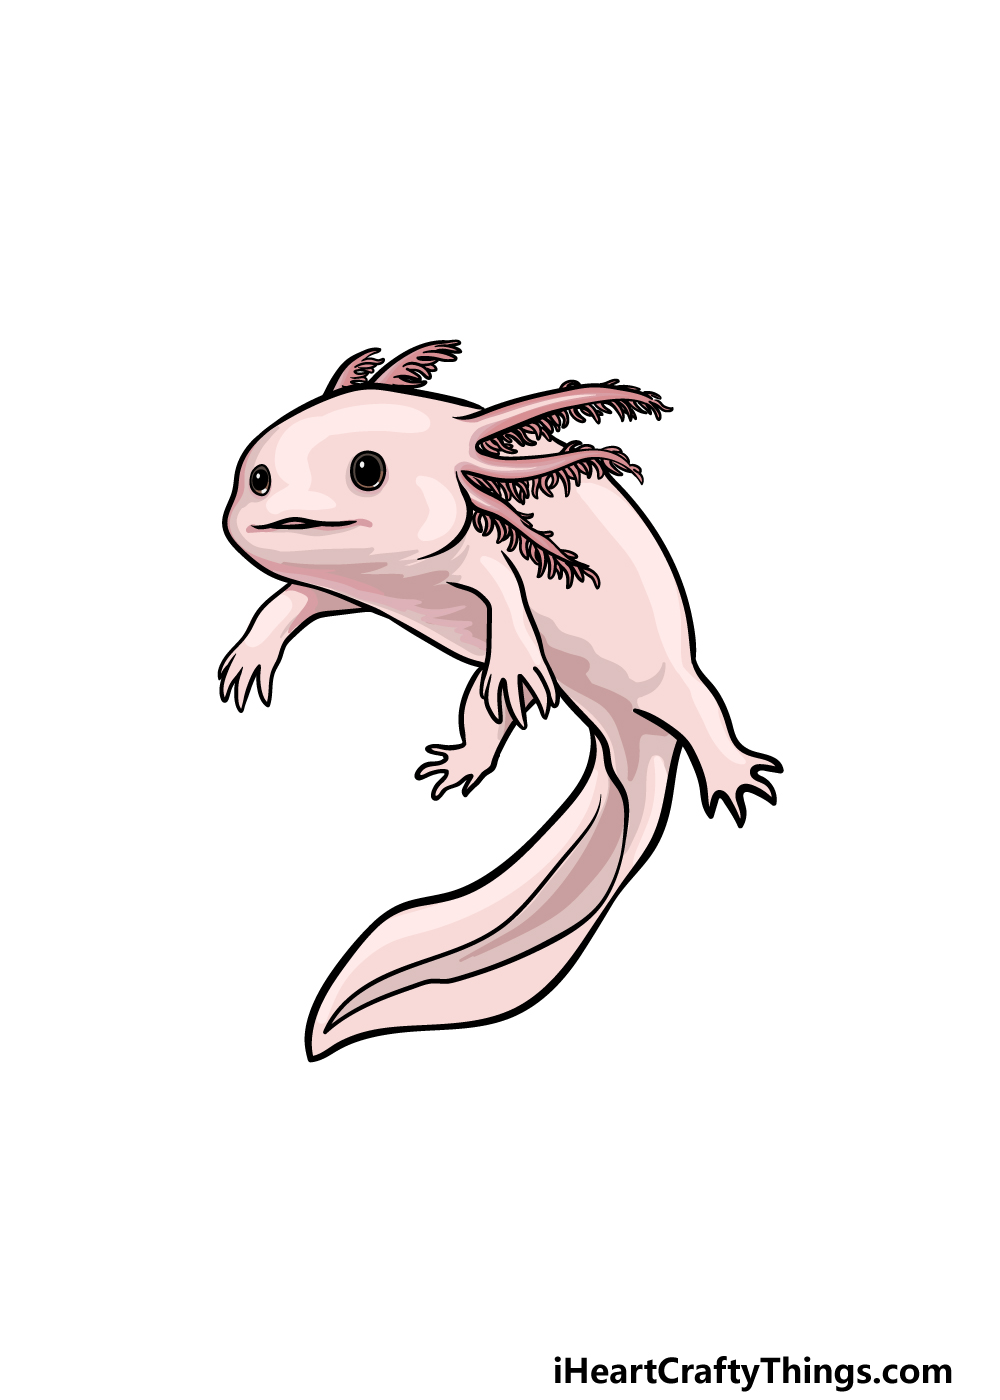 Drawing Axolotl step 6